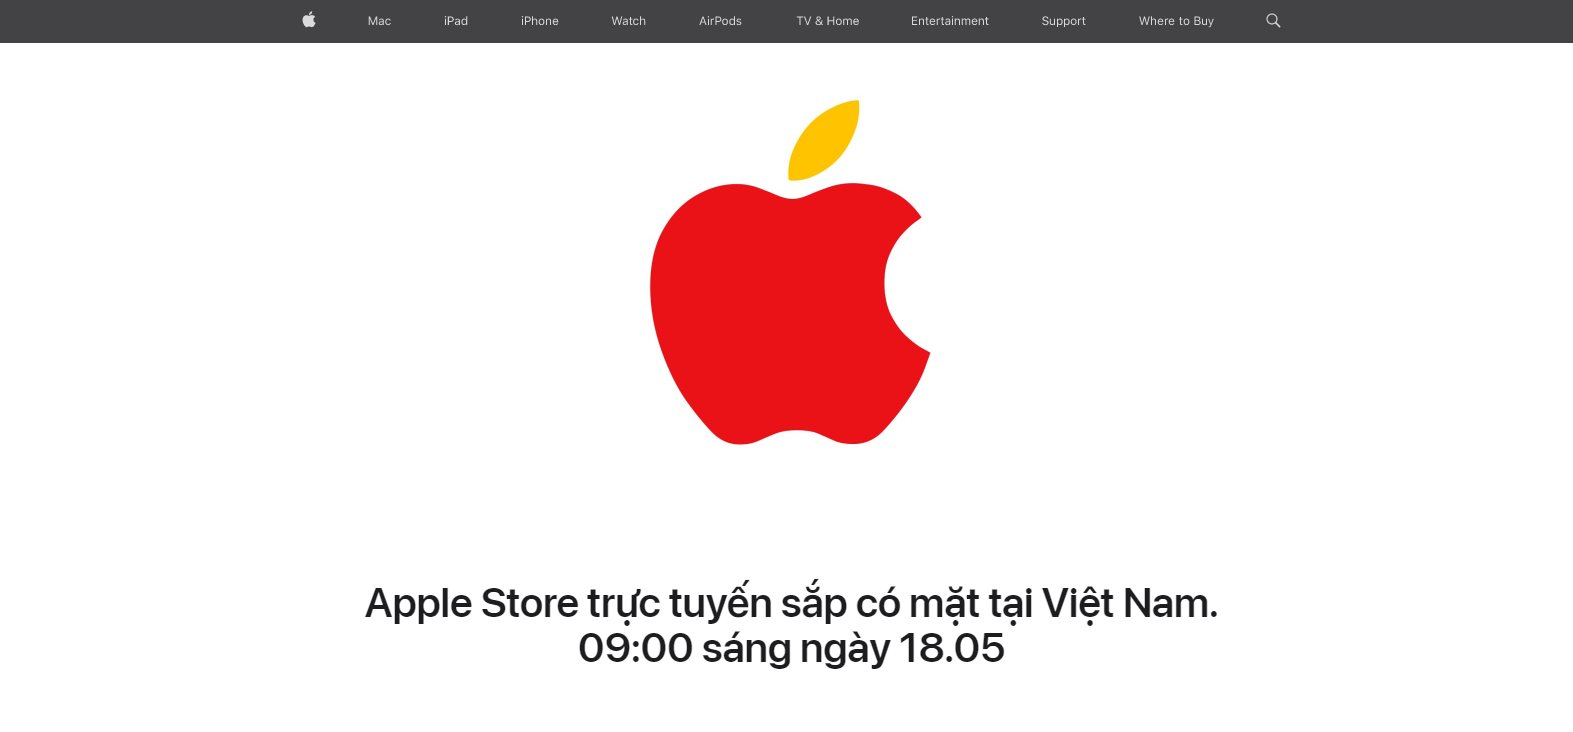 Apple Store mở cửa hàng trực tuyến tại Việt Nam, FPT Shop lên tiếng: Tự tin dịch vụ, giá cả cạnh tranh nhất thị trường - Ảnh 2.